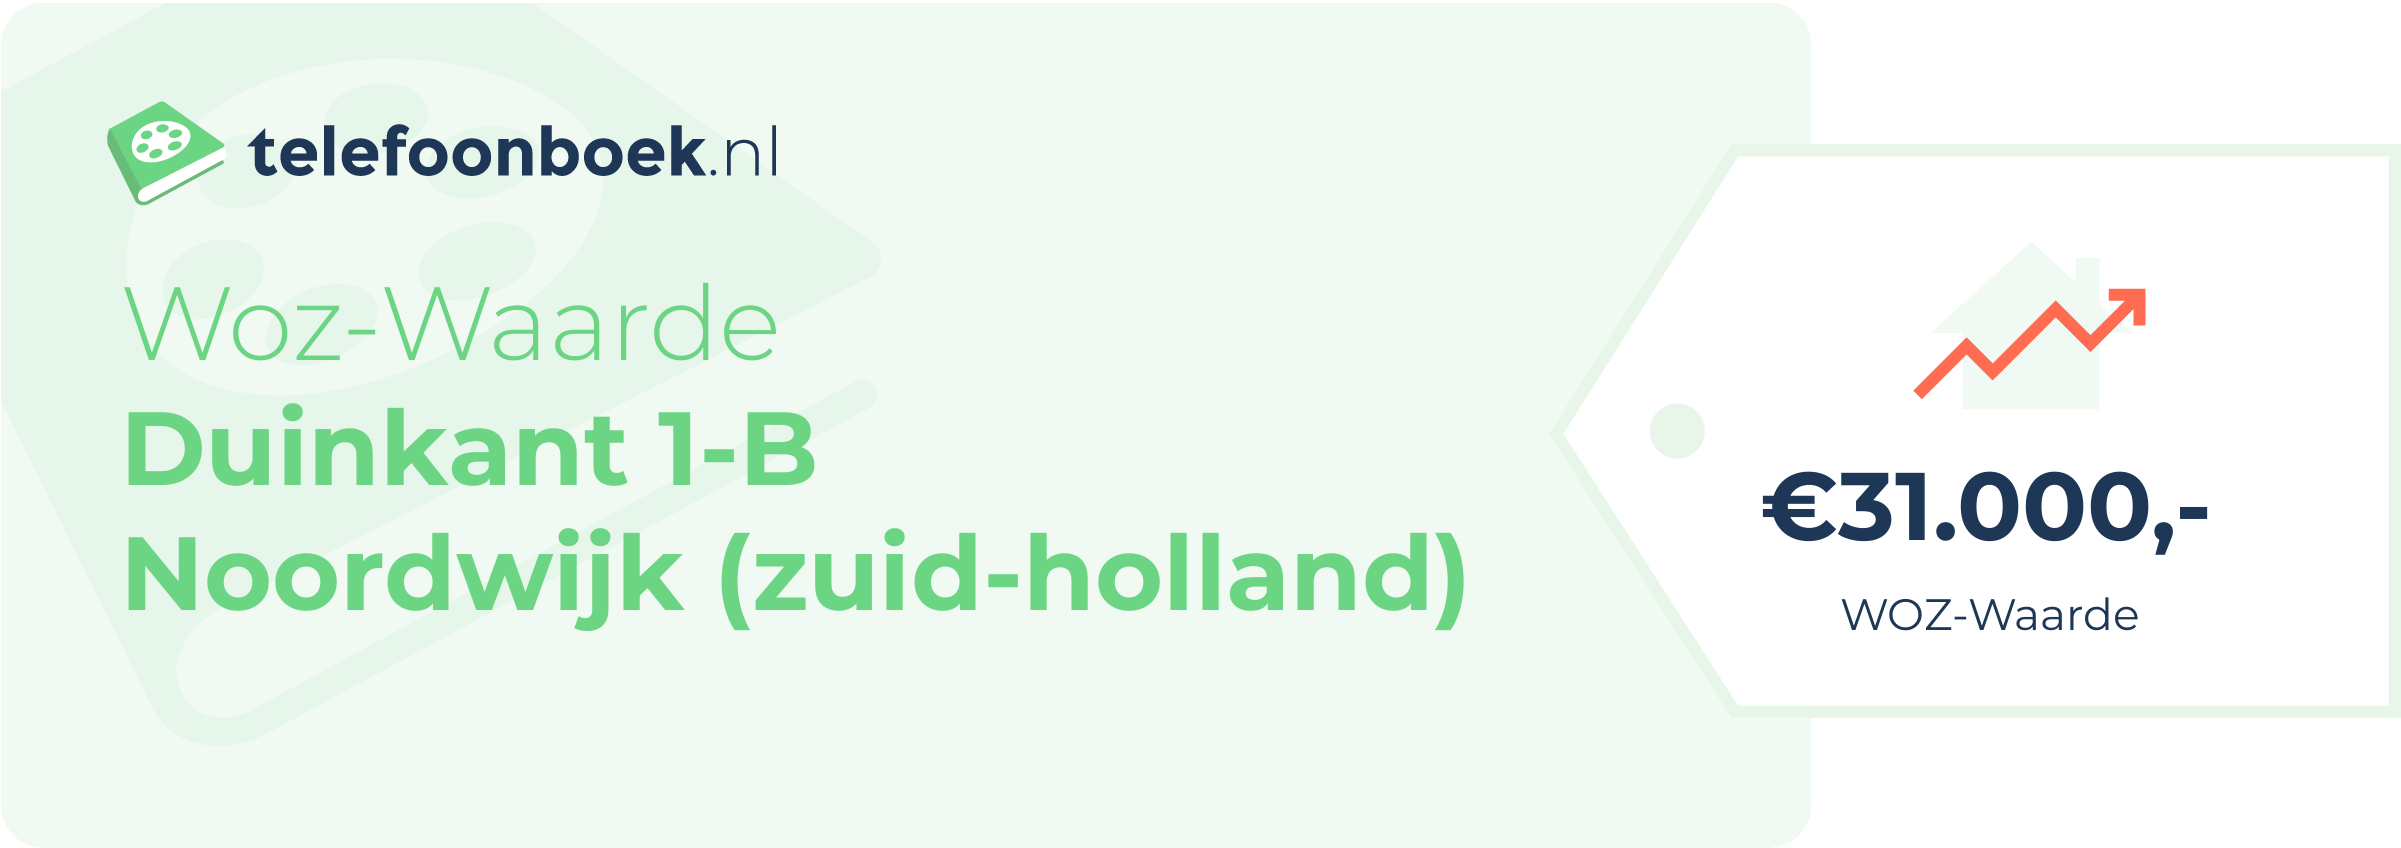 WOZ-waarde Duinkant 1-B Noordwijk (Zuid-Holland)